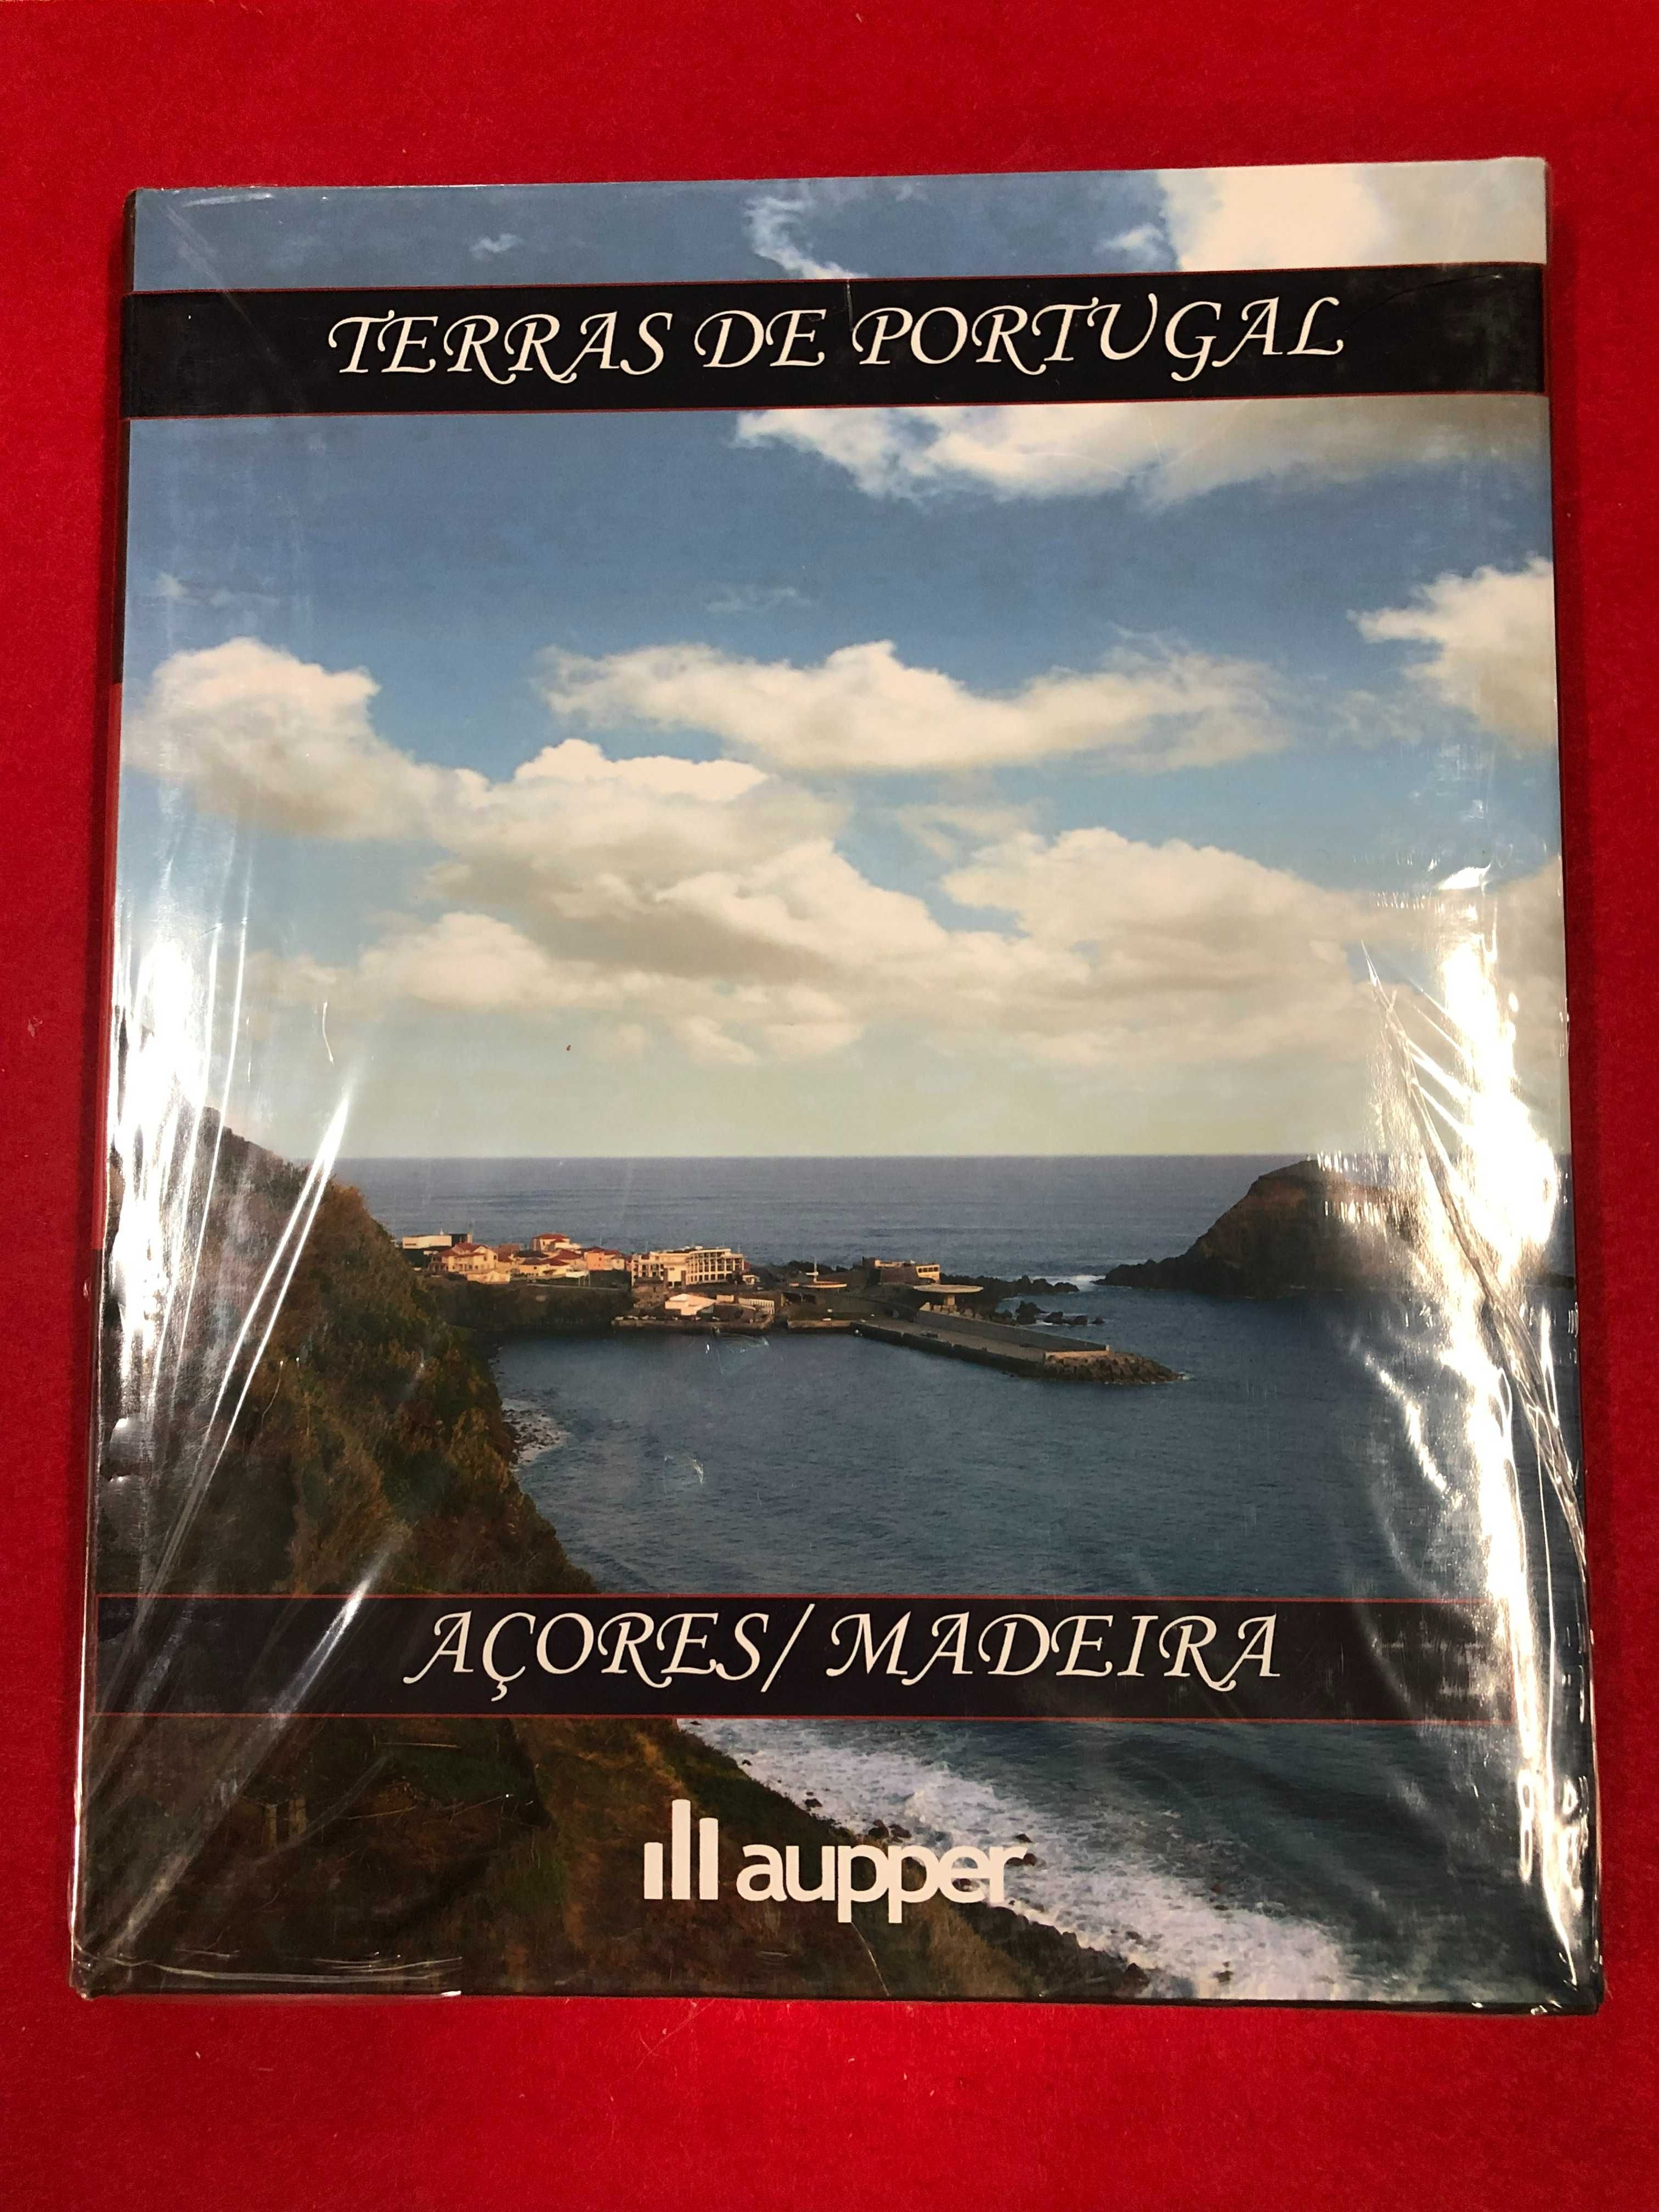 Terras de Portugal – coleção completa 10 volumes